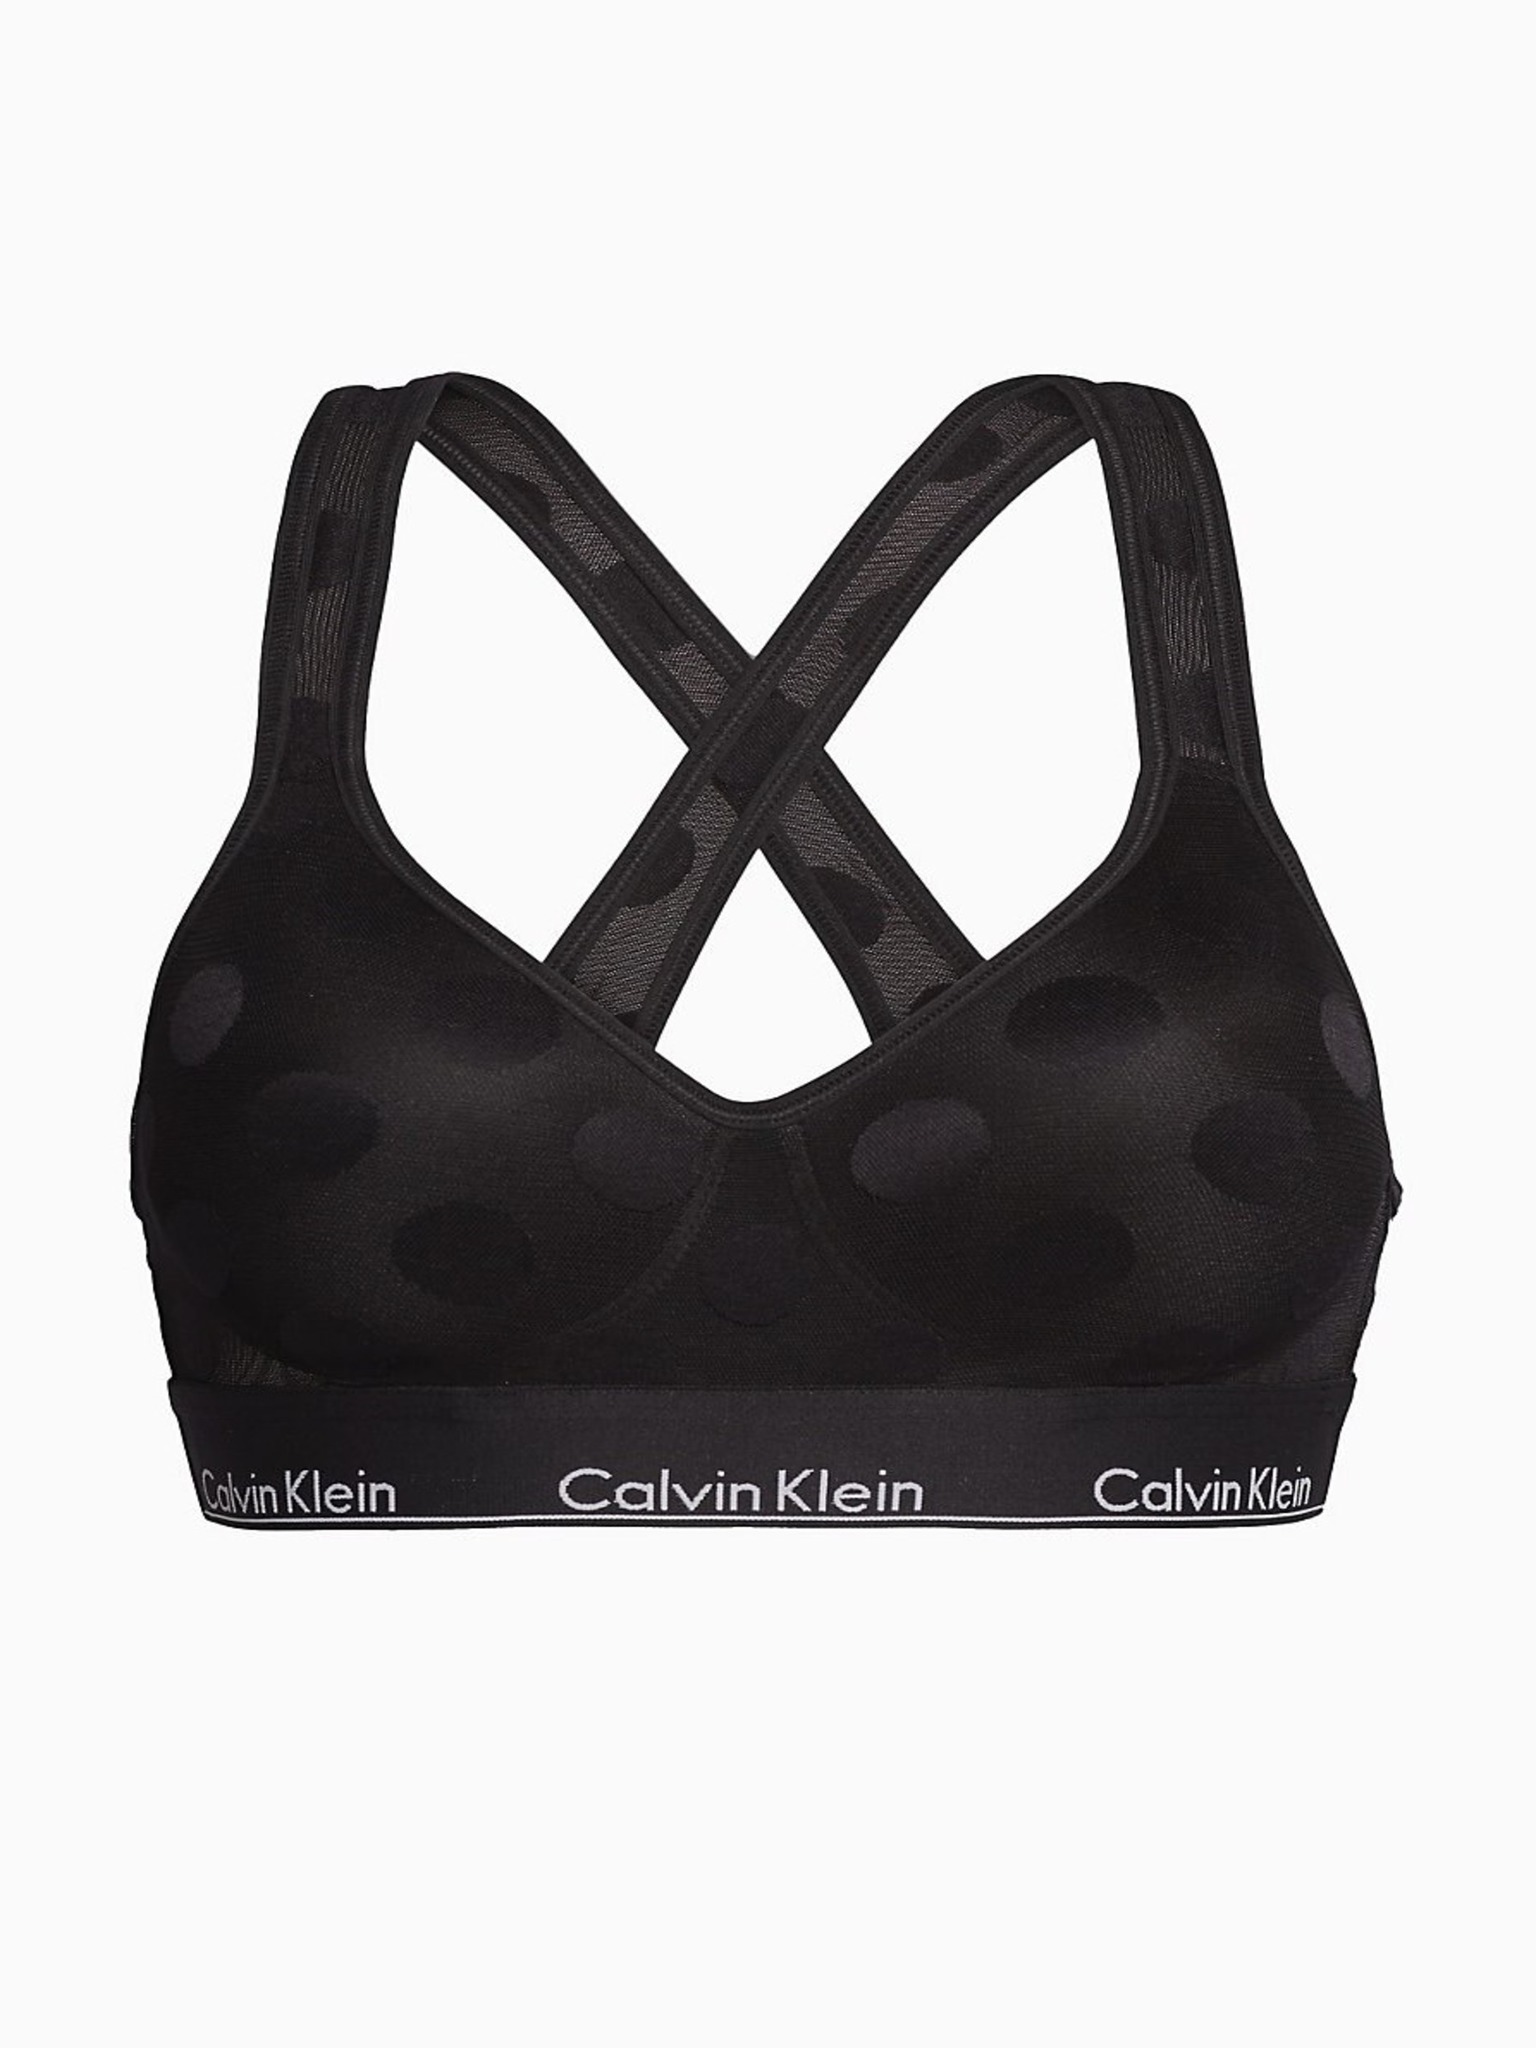 Calvin Klein - Lightly Lined Bralette Bra